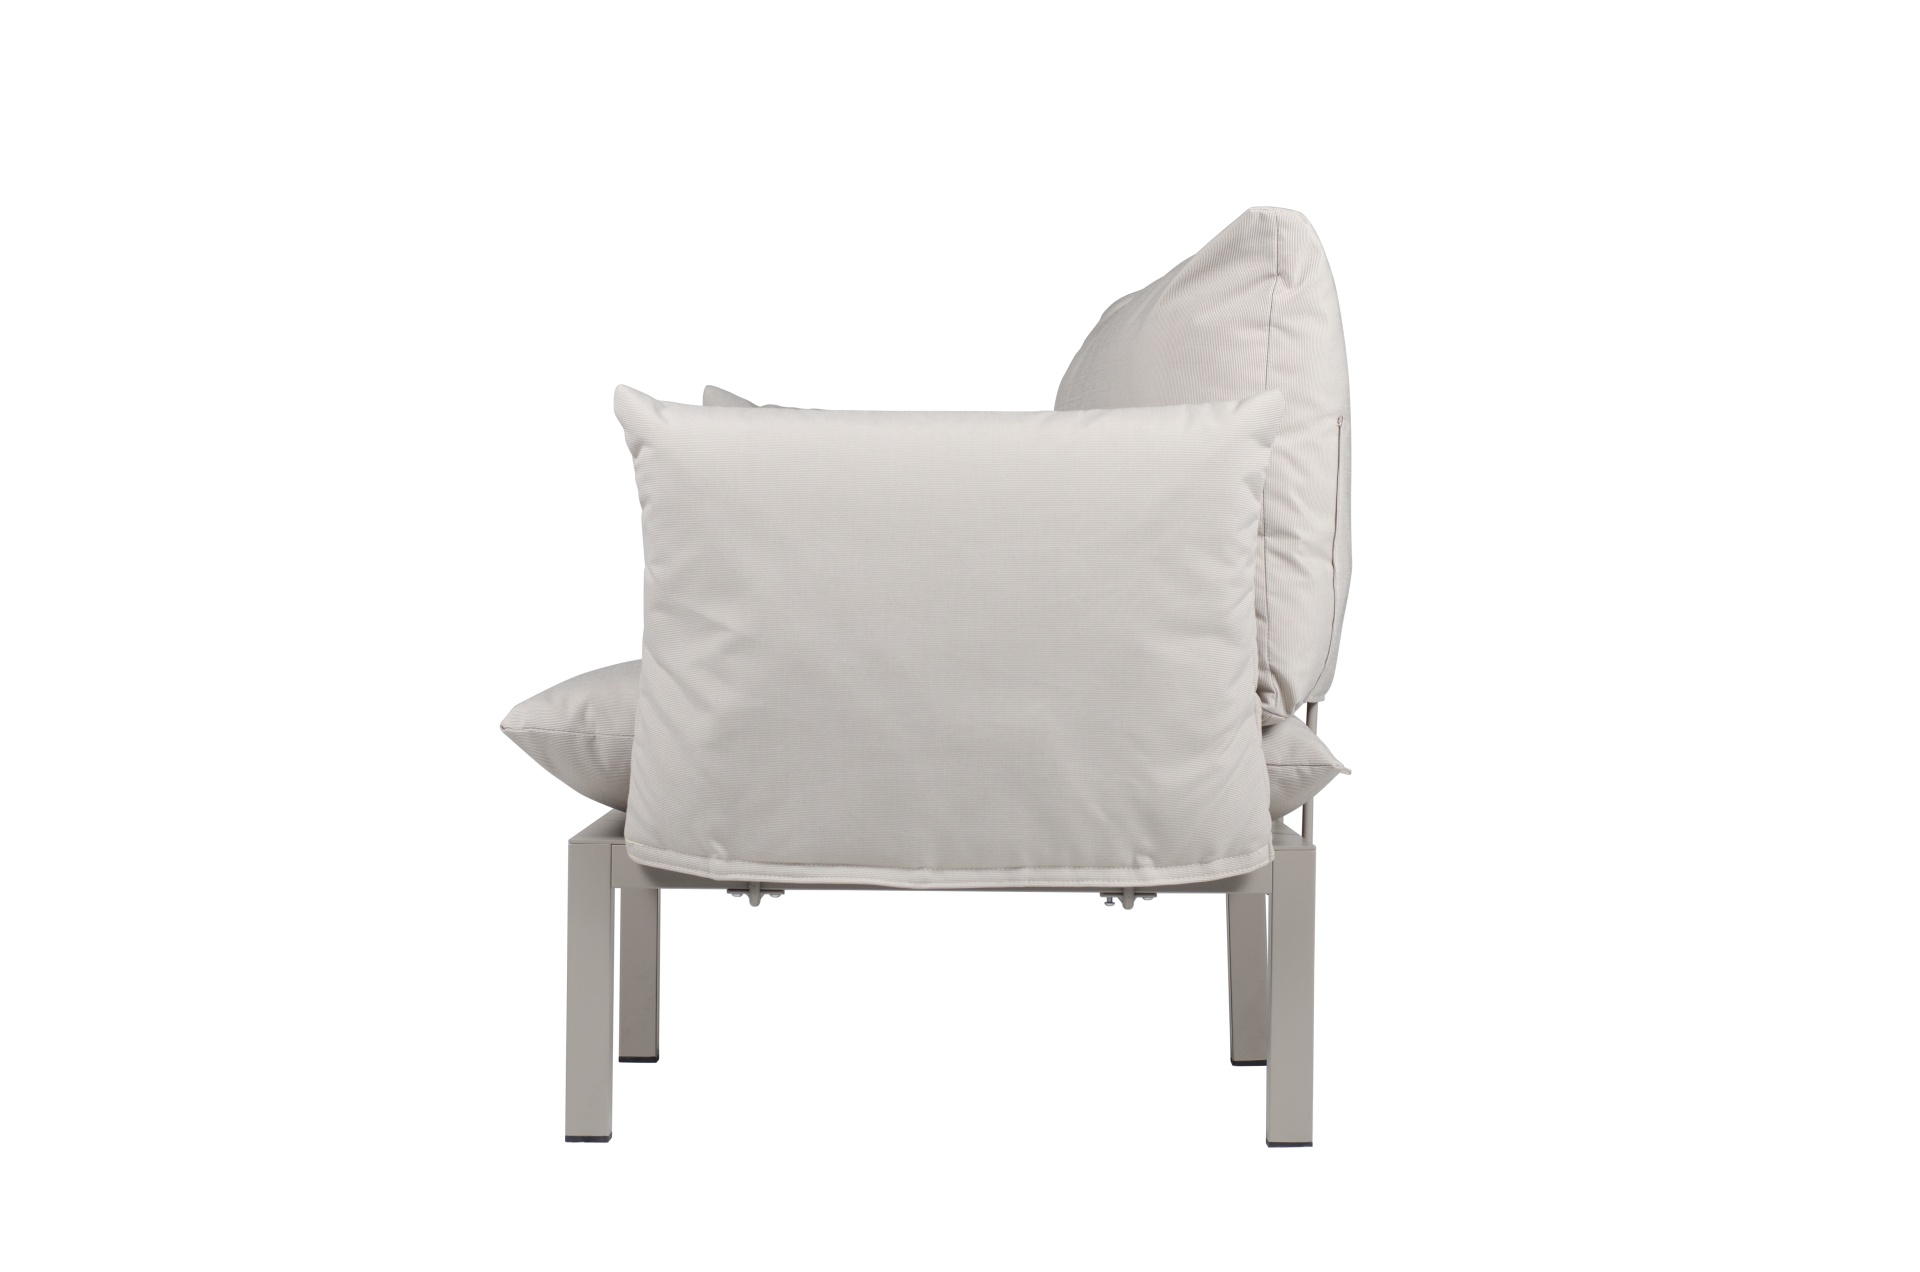 Der moderne Sessel Domino überzeugt mit seinem modernen Design. Er verfügt über ein Aluminium Gestell und ist somit perfekt für den Outdoor-Bereich einsetzbar. Designet wurde er von der Marke Jan Kurtz. Und hat die Farbkombination Gestell Weiß und Bezug T